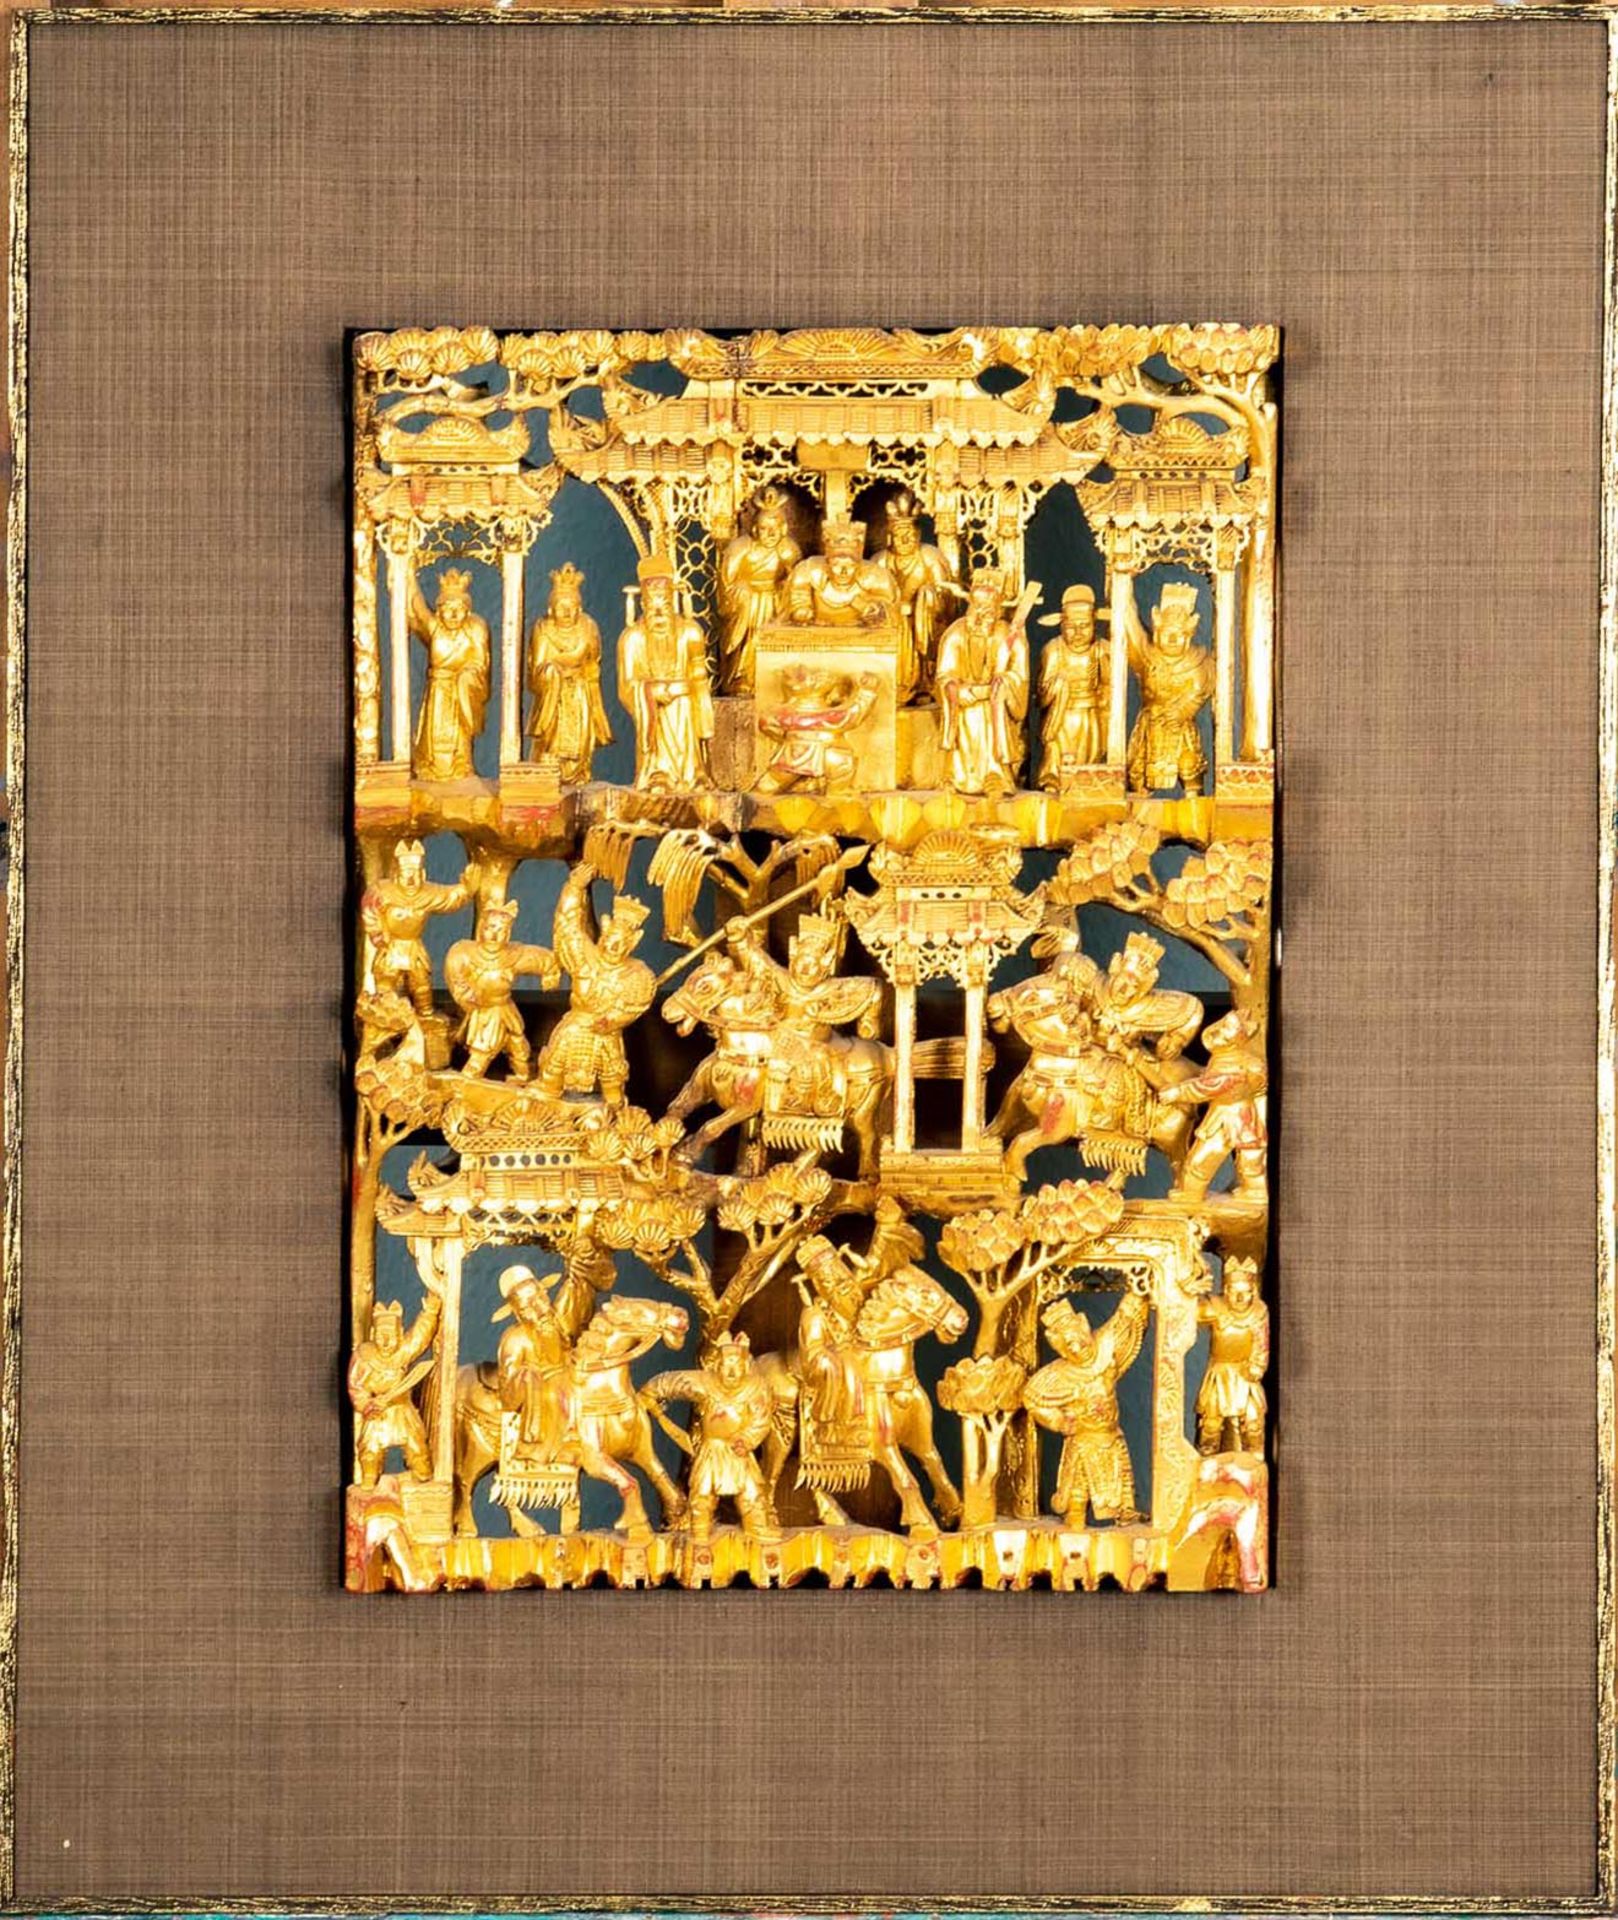 Dekorative asiatische Schnitzarbeit, hochwertig gerahmt, aufwändiger Golddekor, ostasiatischer Raum